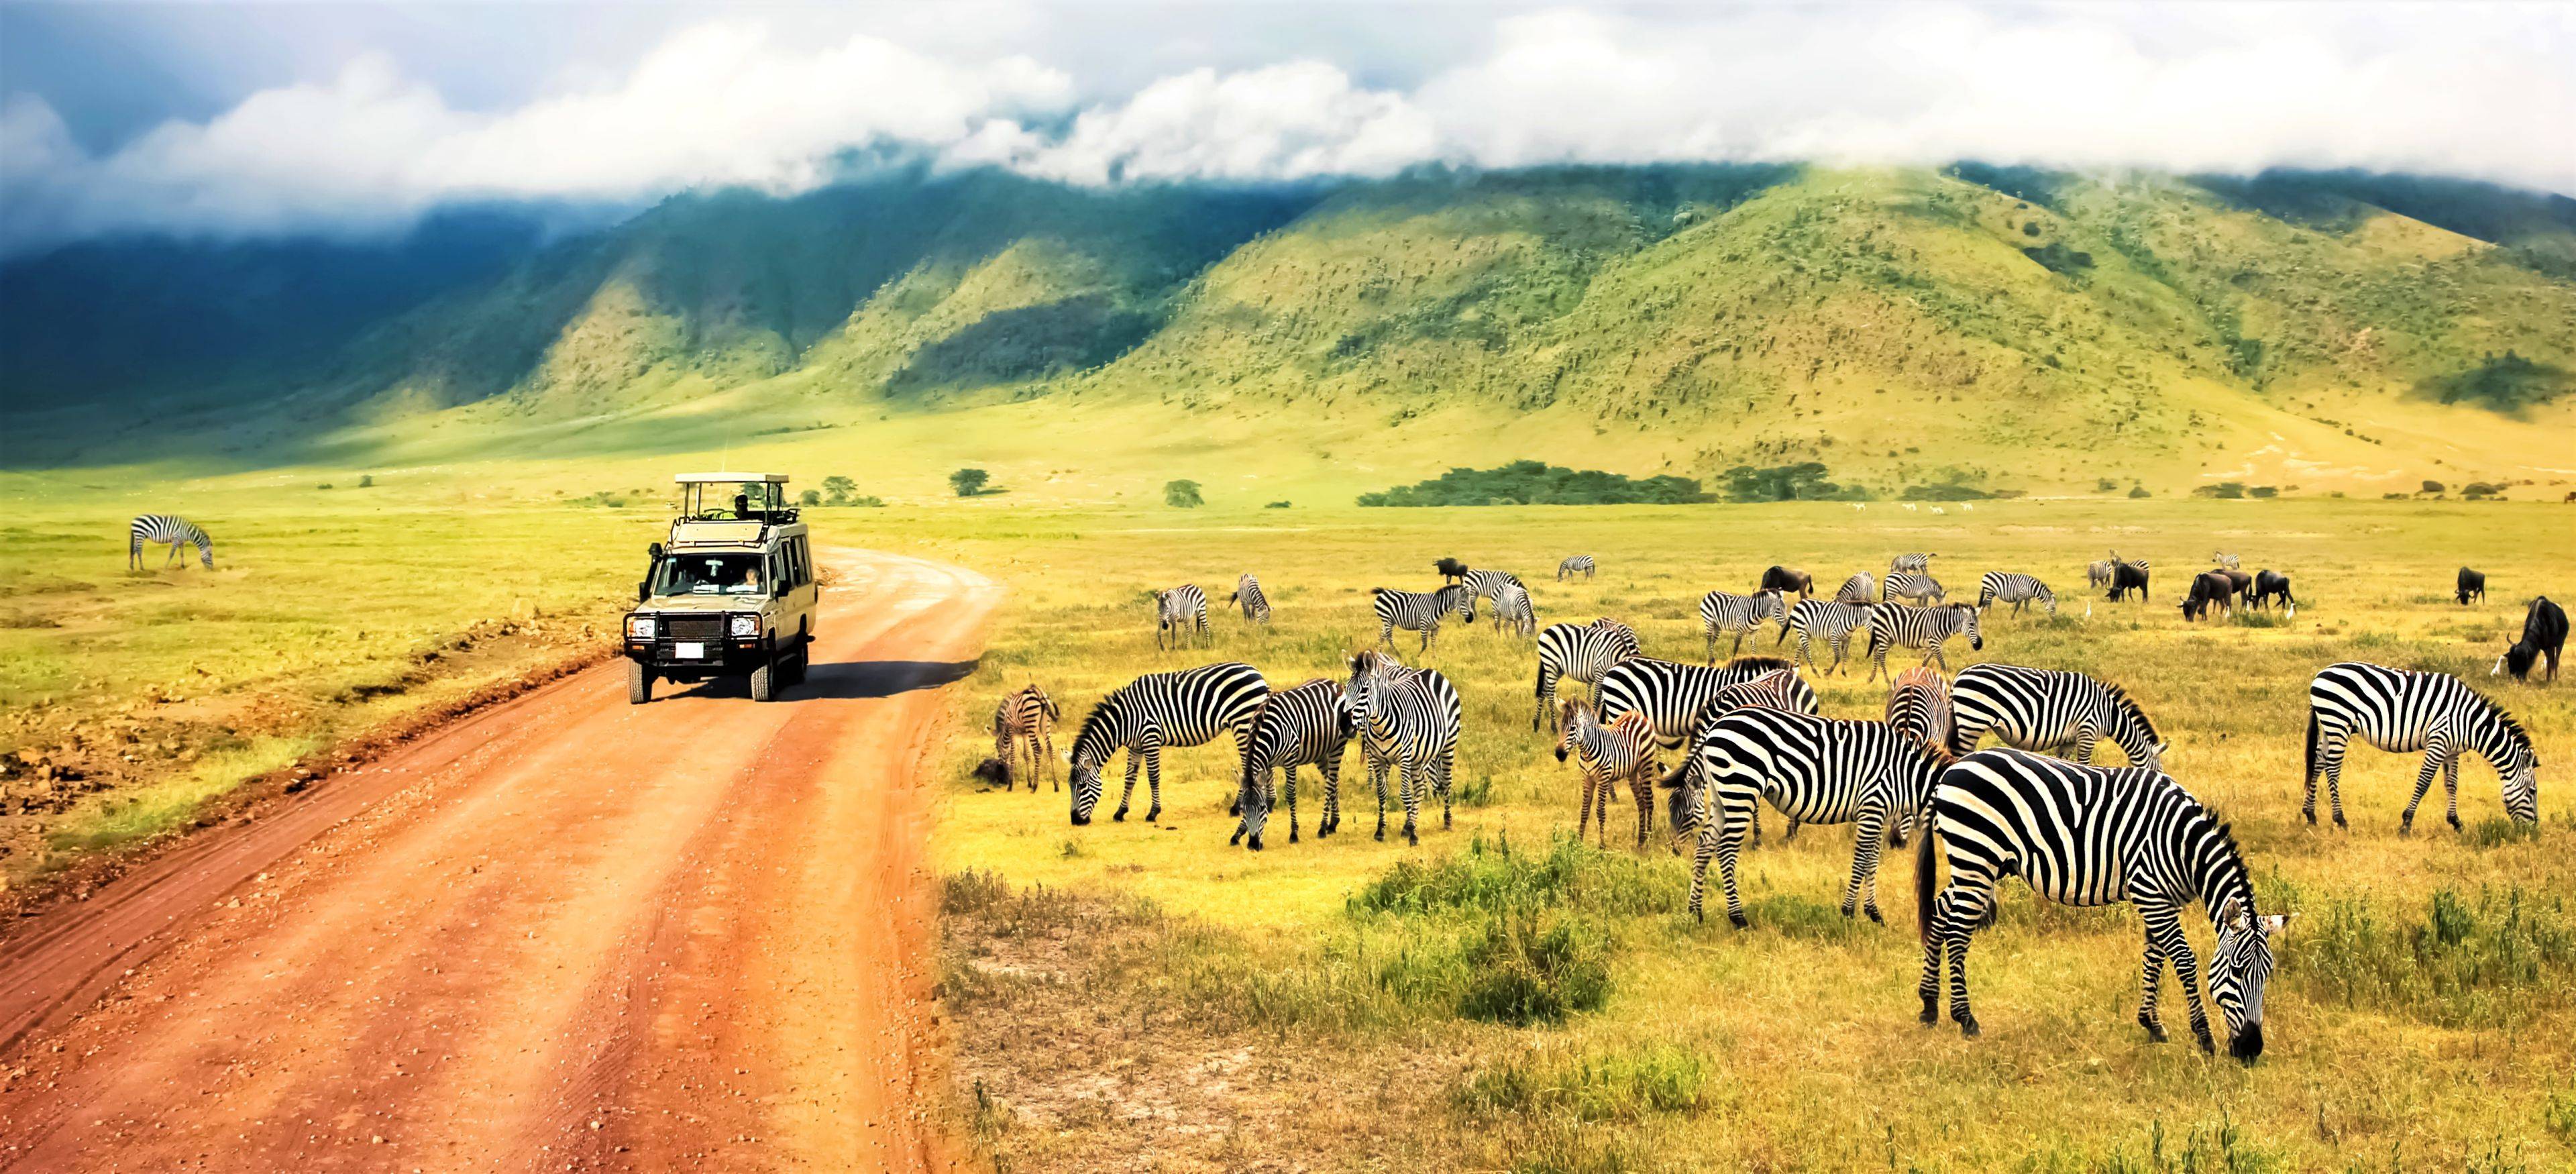 Safari confort en los mejores parques de Tanzania